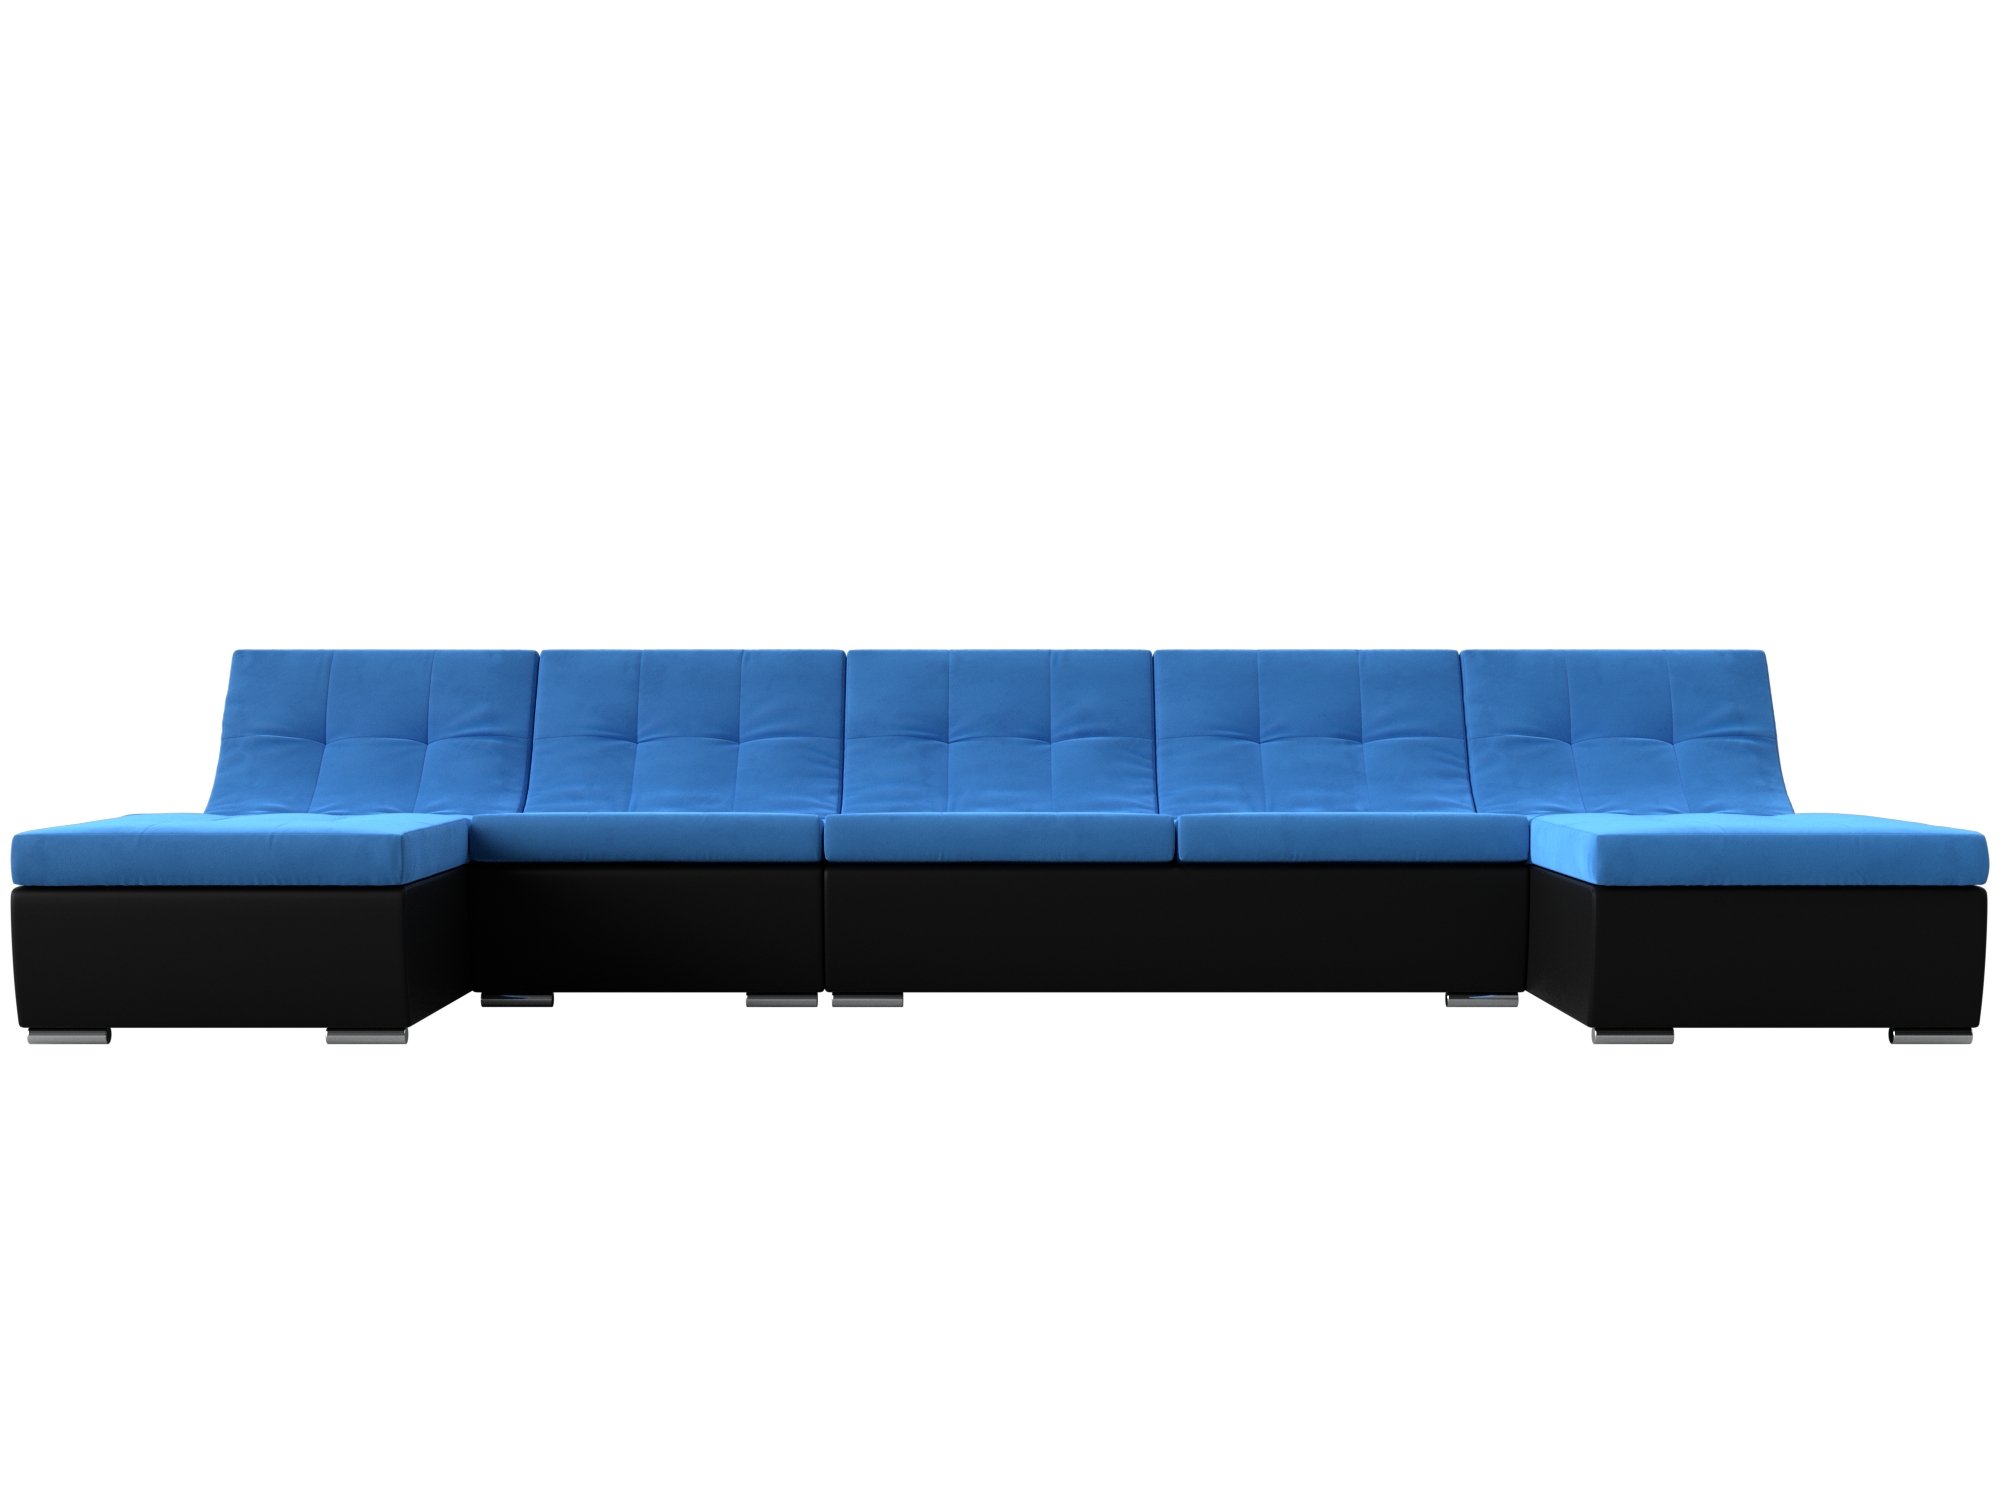 П-образный модульный диван Монреаль Long MebelVia Голубой, Черный, Велюр, Экокожа, ЛДСП угловой модульный диван монреаль mebelvia голубой черный велюр экокожа лдсп